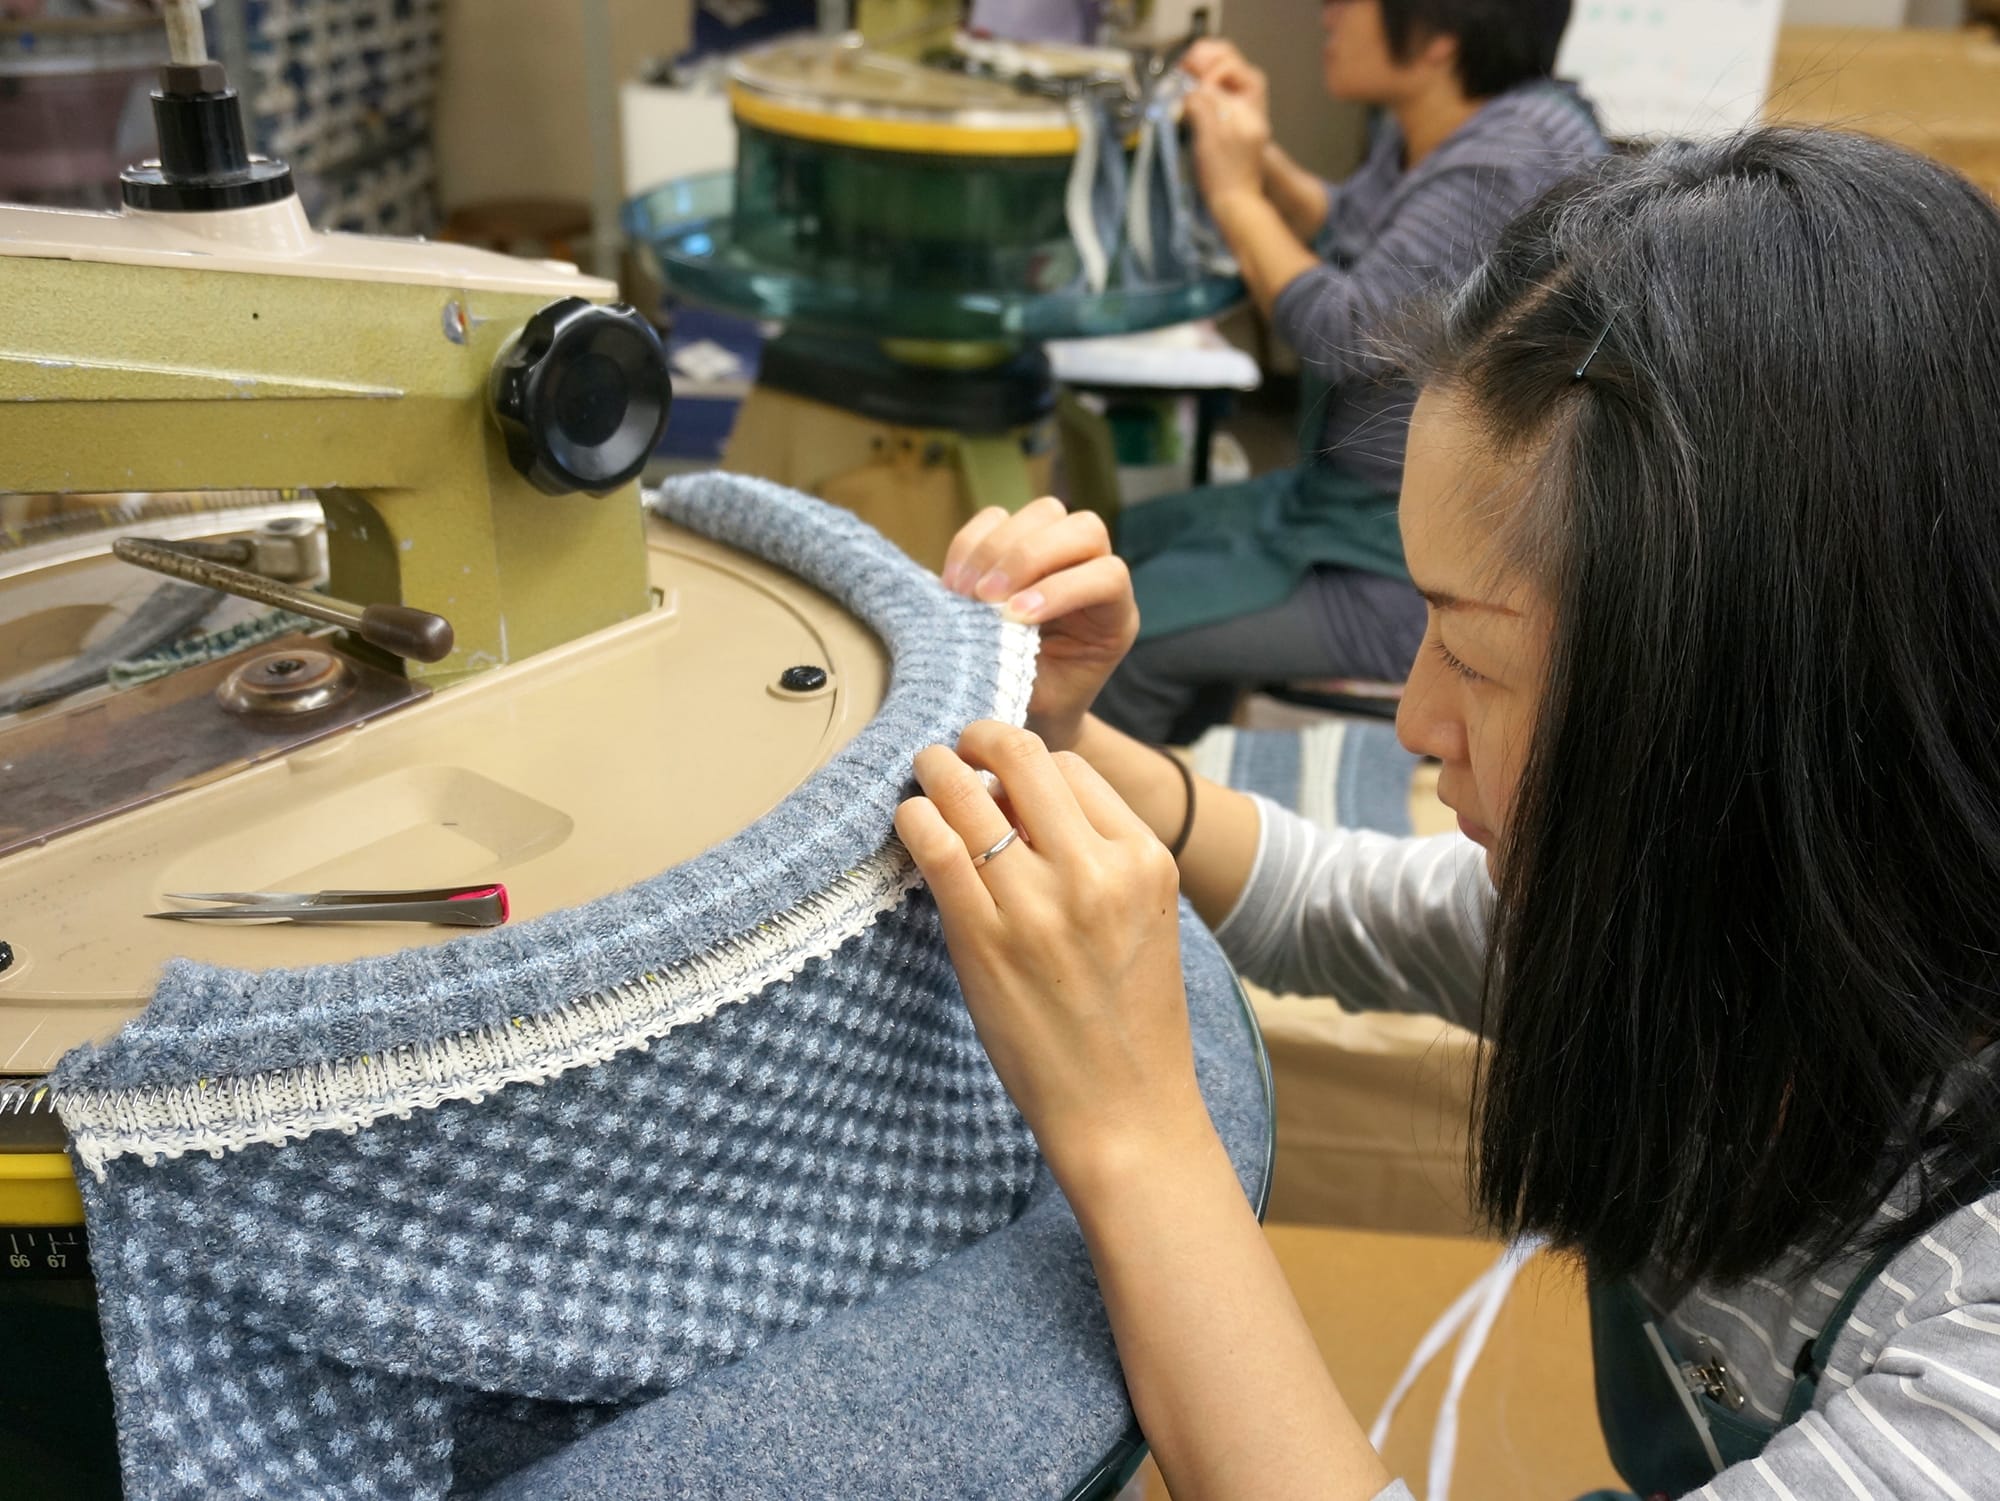 リンキングと呼ばれる、ニットの編み目を一目ずつ、針に通して縫い上げていく作業。 